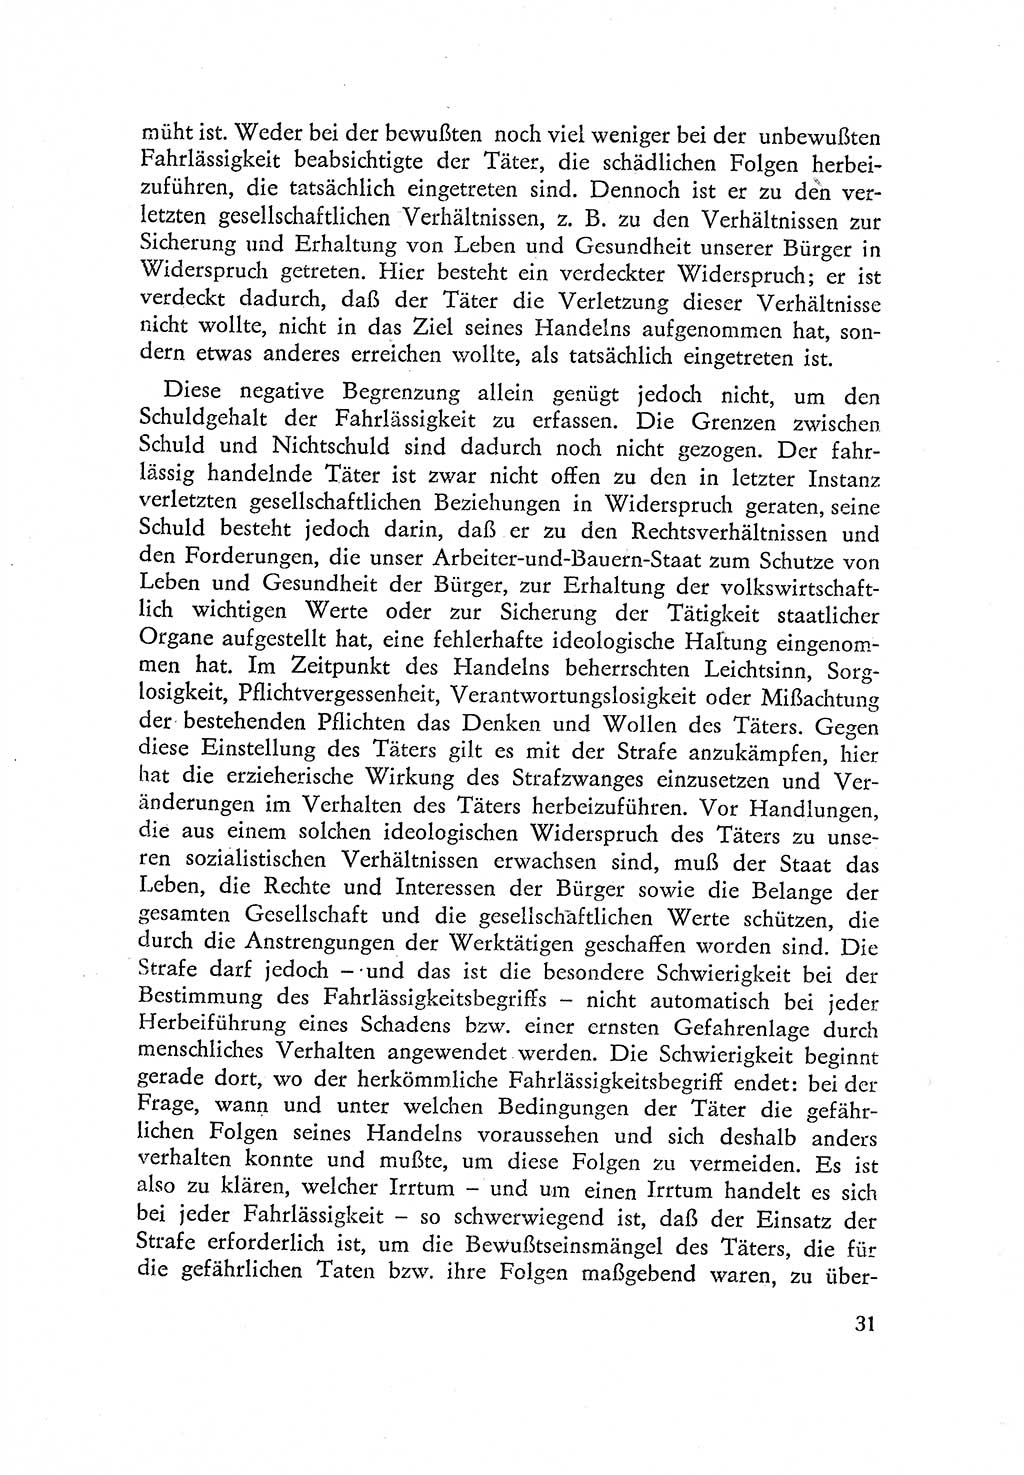 Beiträge zum Strafrecht [Deutsche Demokratische Republik (DDR)] 1959, Seite 31 (Beitr. Strafr. DDR 1959, S. 31)